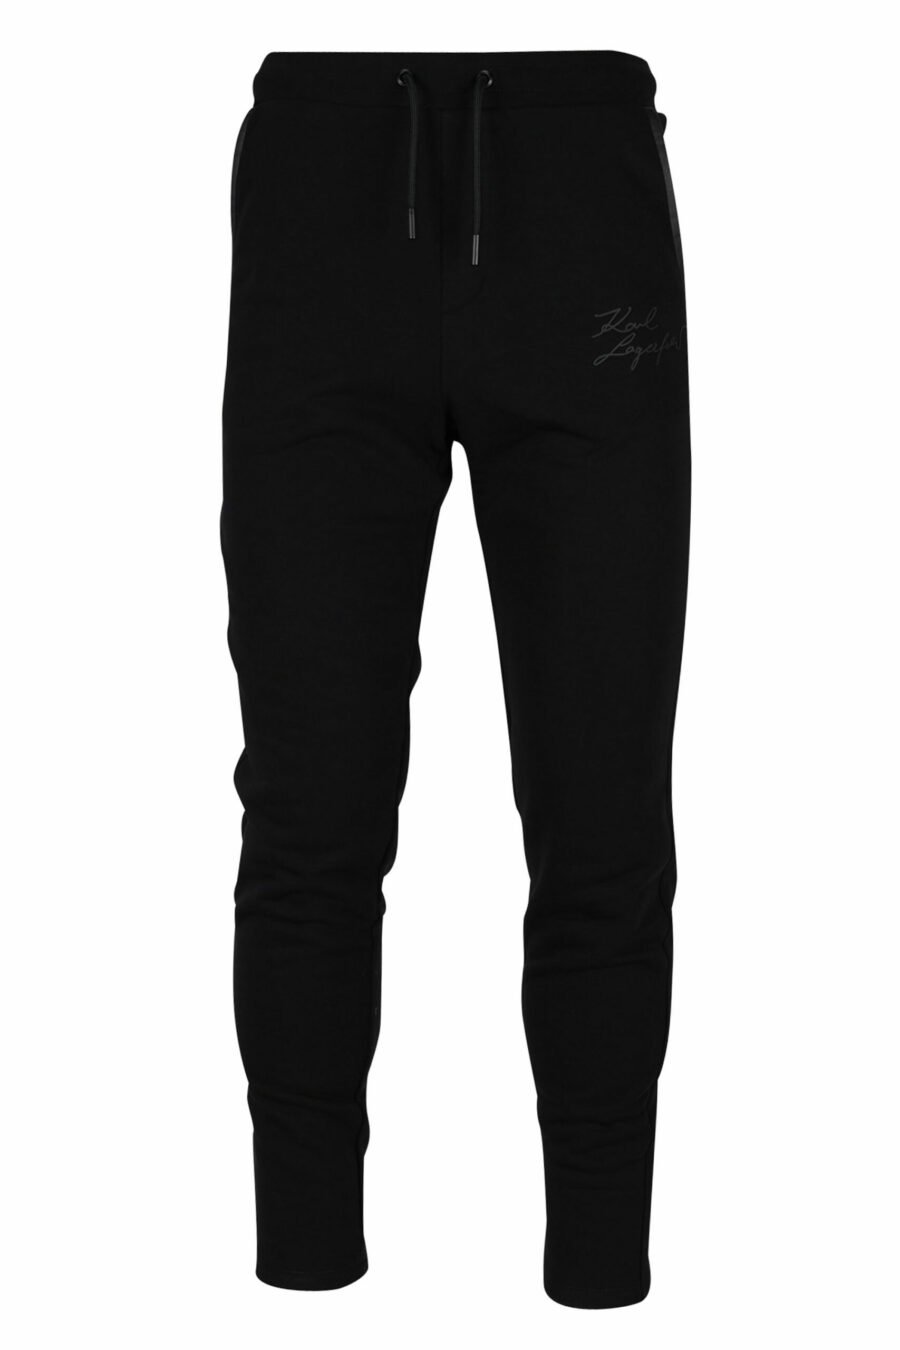 Pantalón de chándal negro con minilogo negro autografo - 4062226391092 scaled